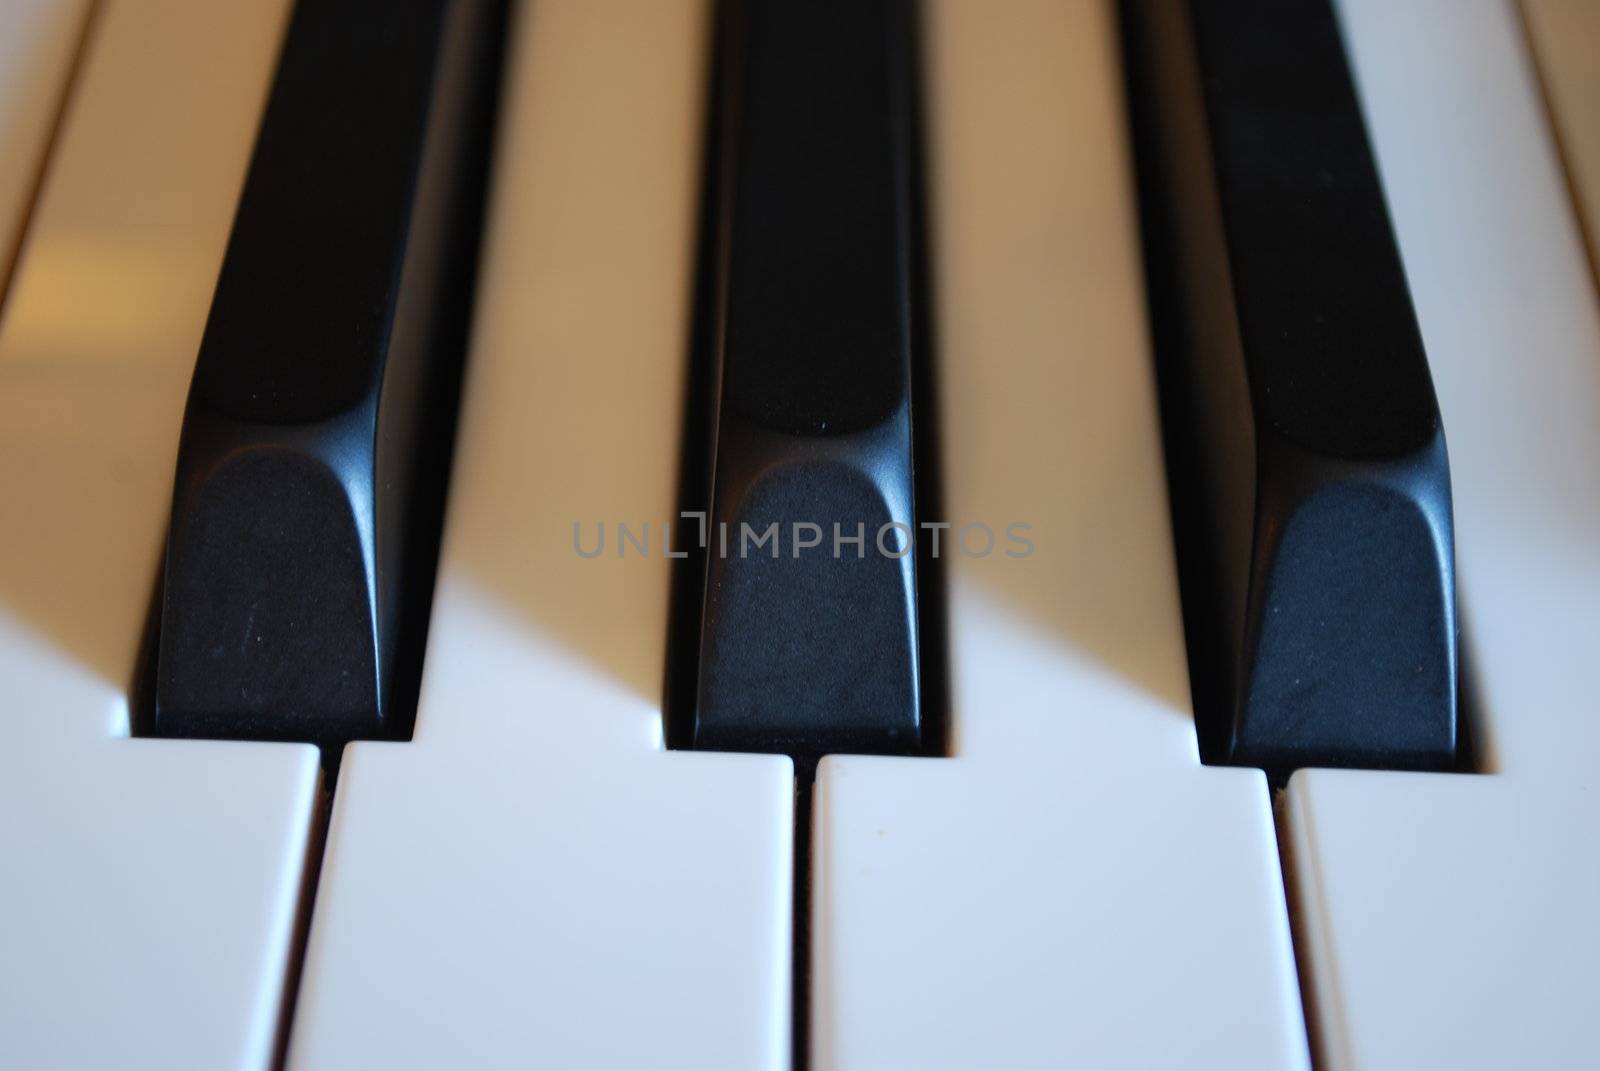 Piano keys by luissantos84